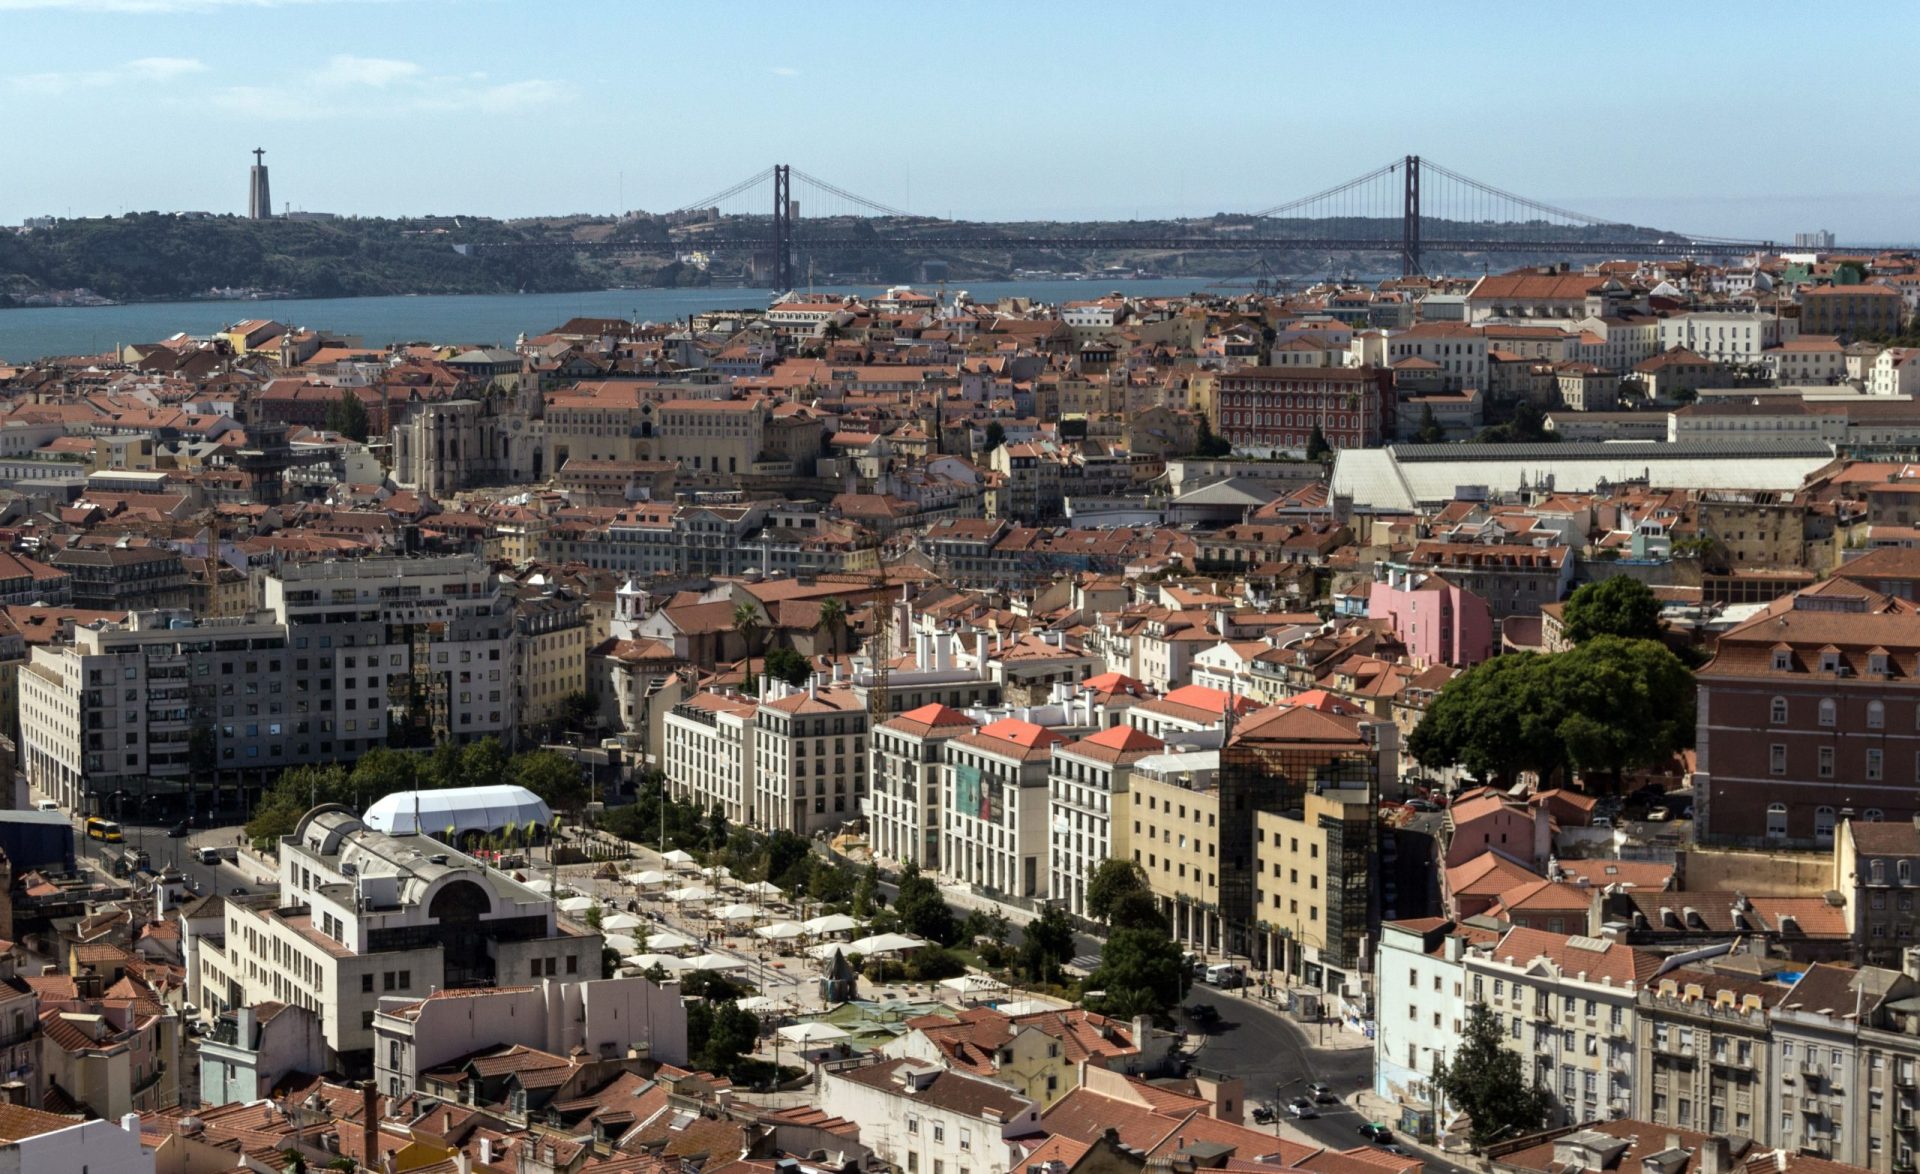 Hotéis criticam taxa sobre dormidas anunciada para Lisboa